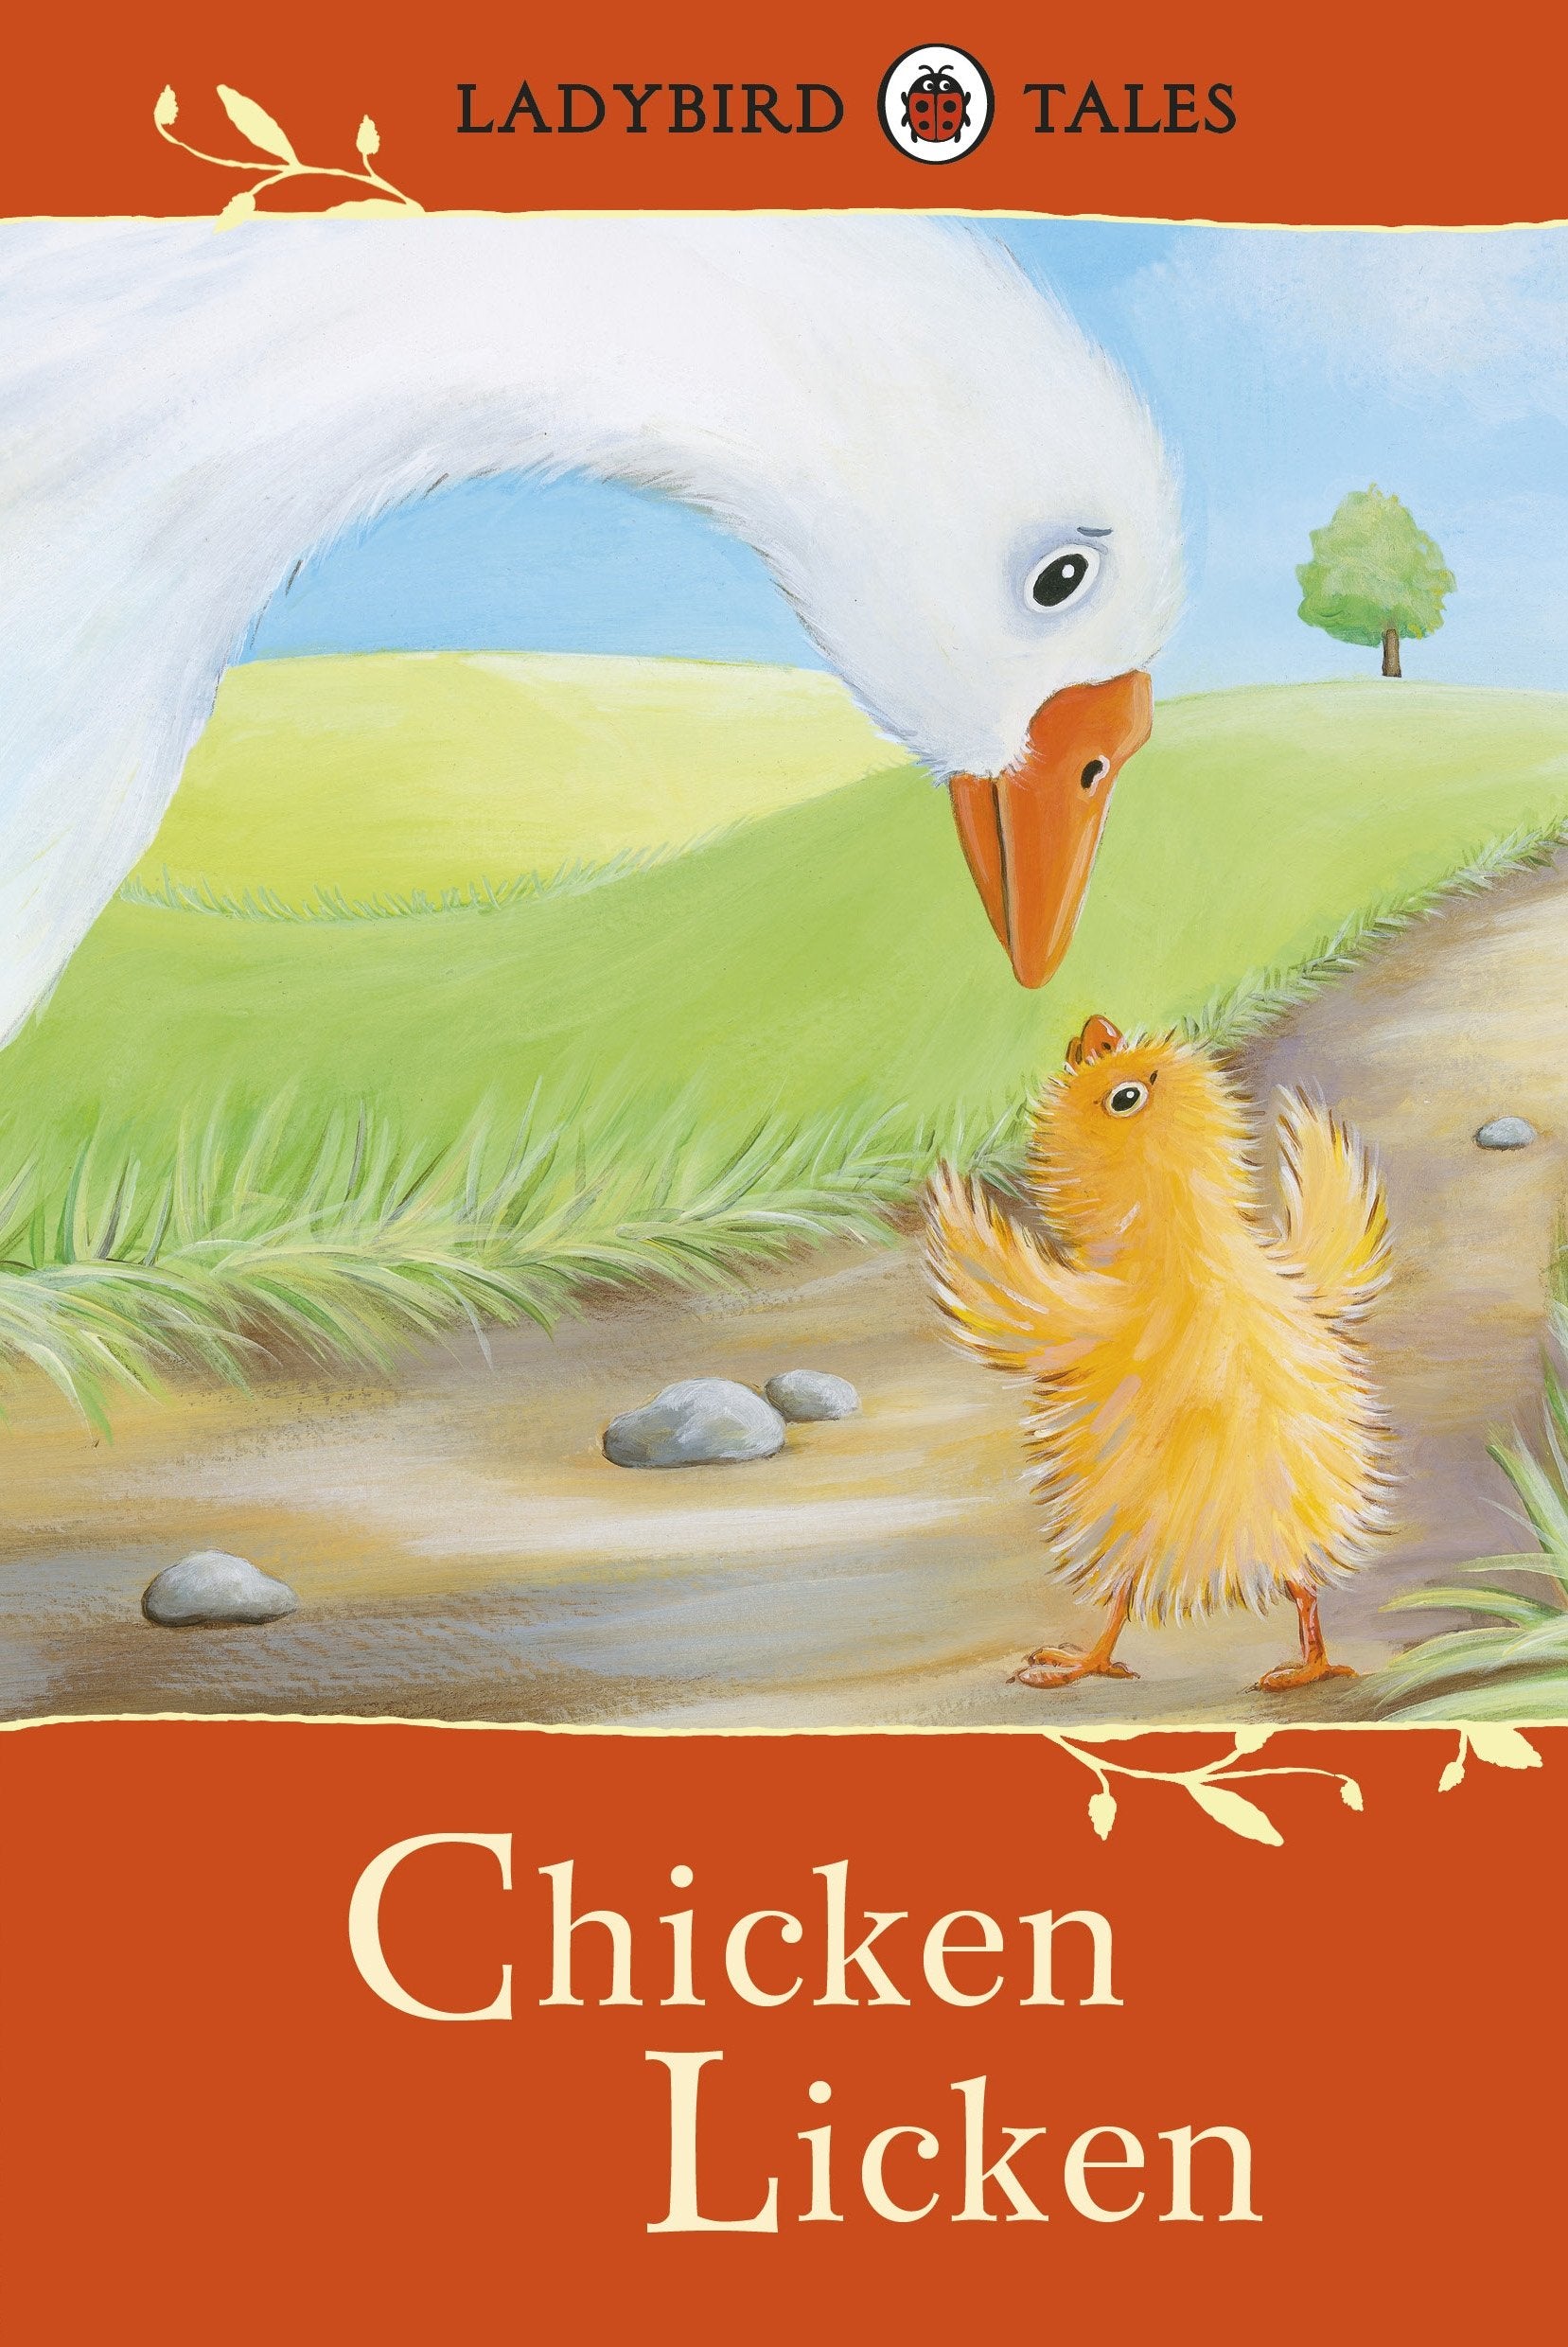 Ladybird Tales Chicken Licken Hardcover